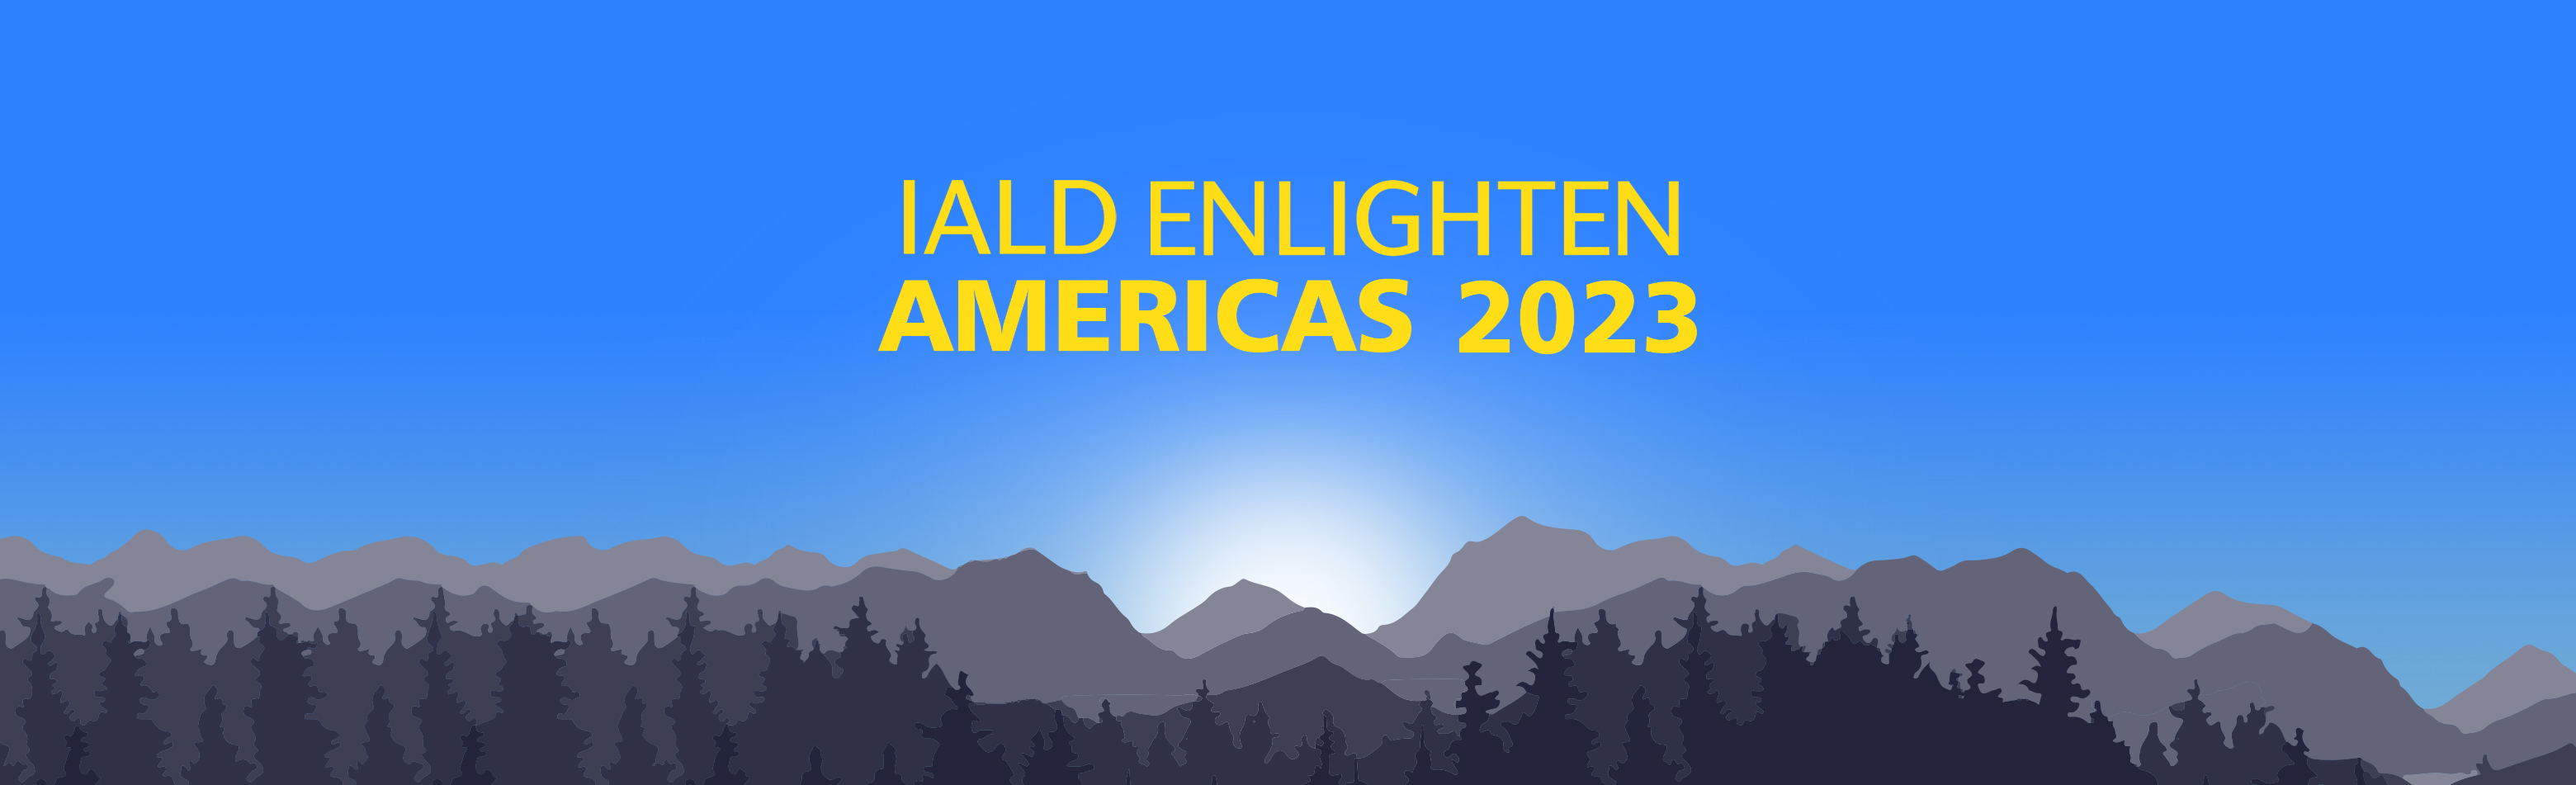 IALD Enlighten Americas 2023